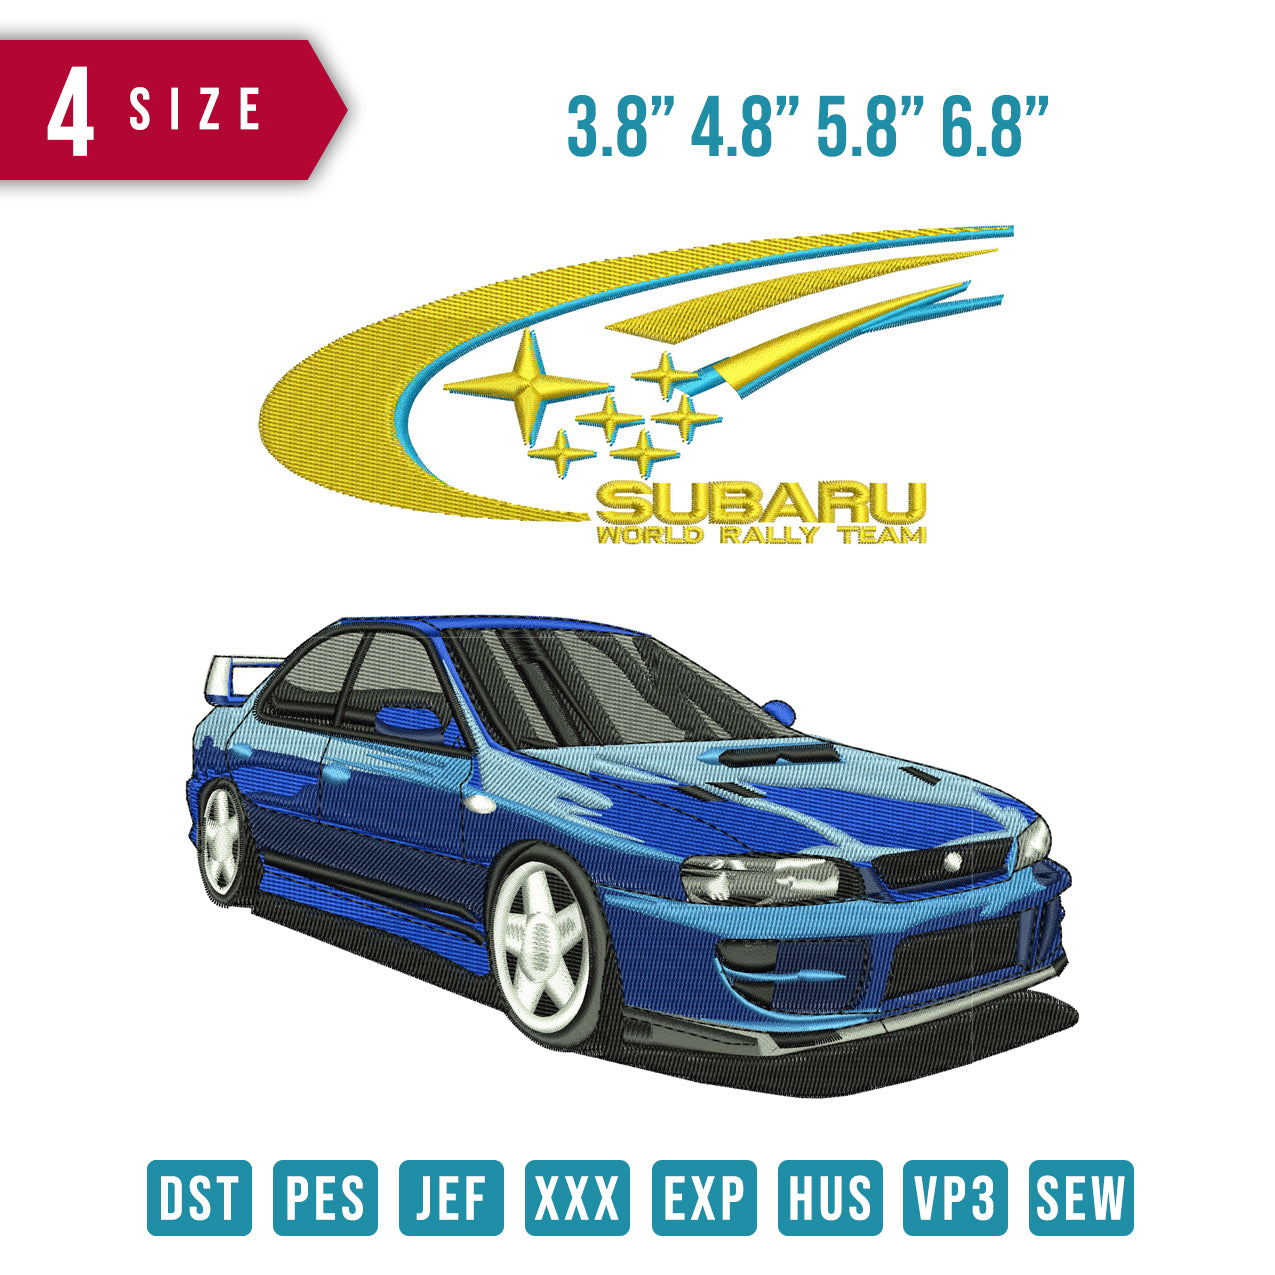 Subaru Car